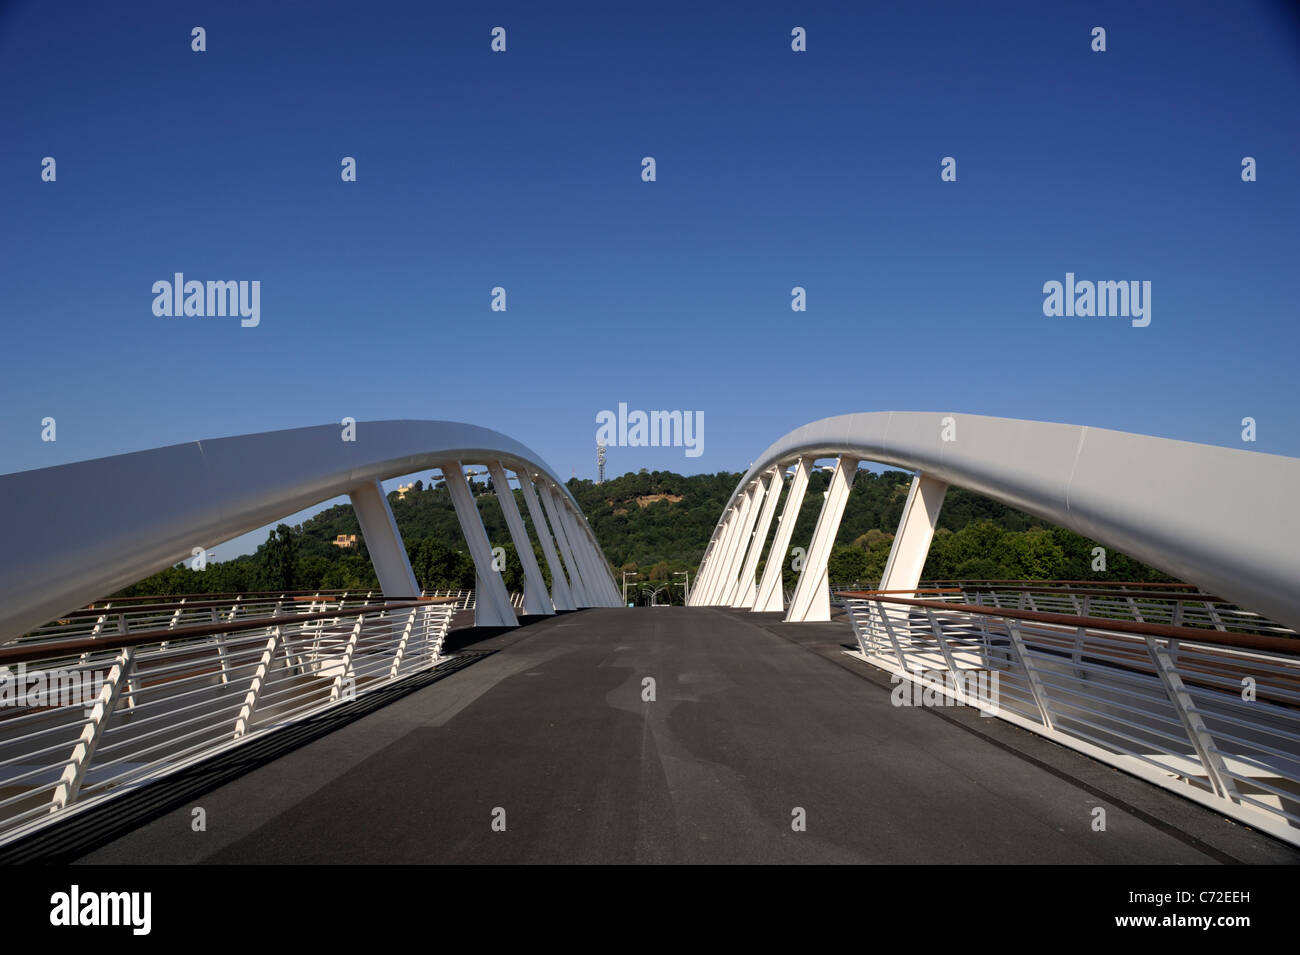 italy, rome, ponte della musica, music bridge, the new pedestrian bridge in rome Stock Photo